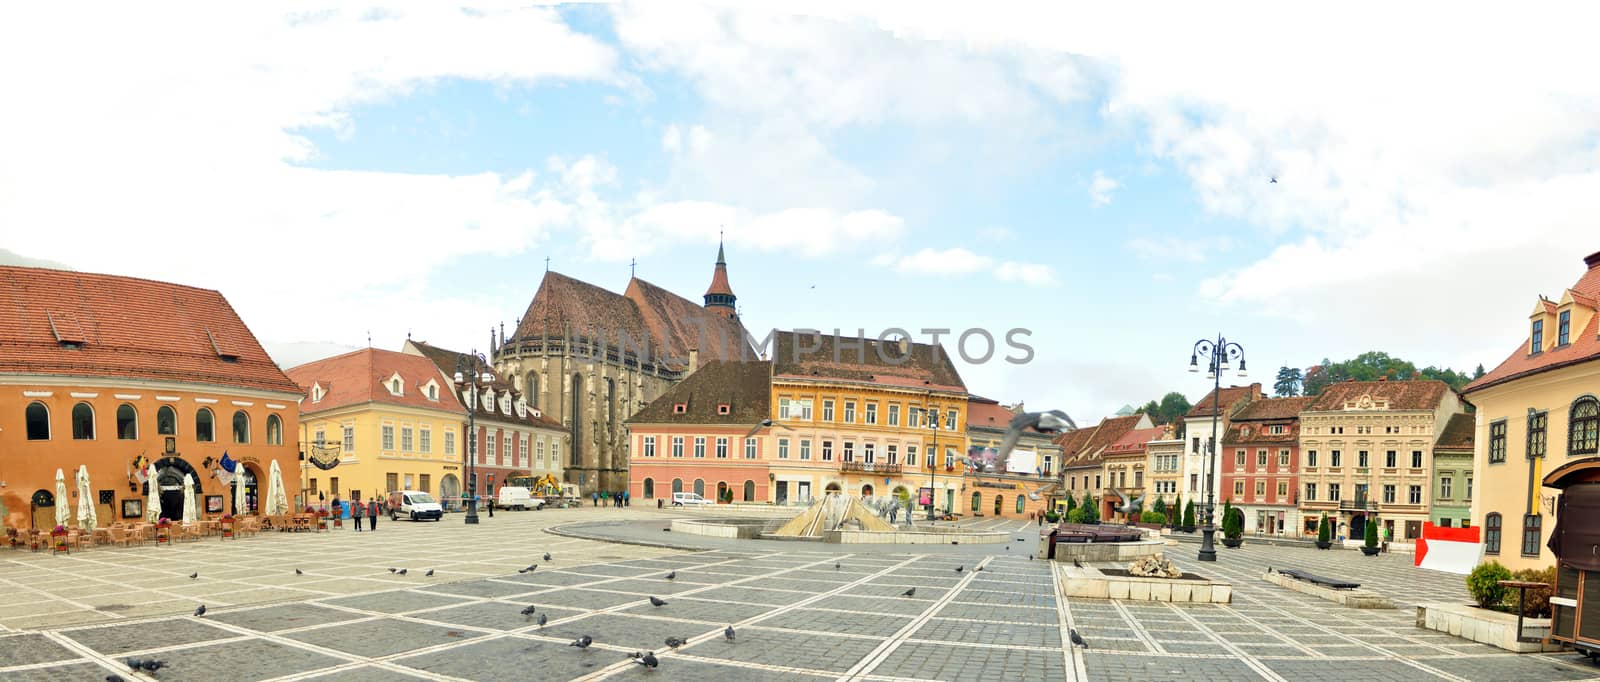 brasov city romania council square landmark panorama